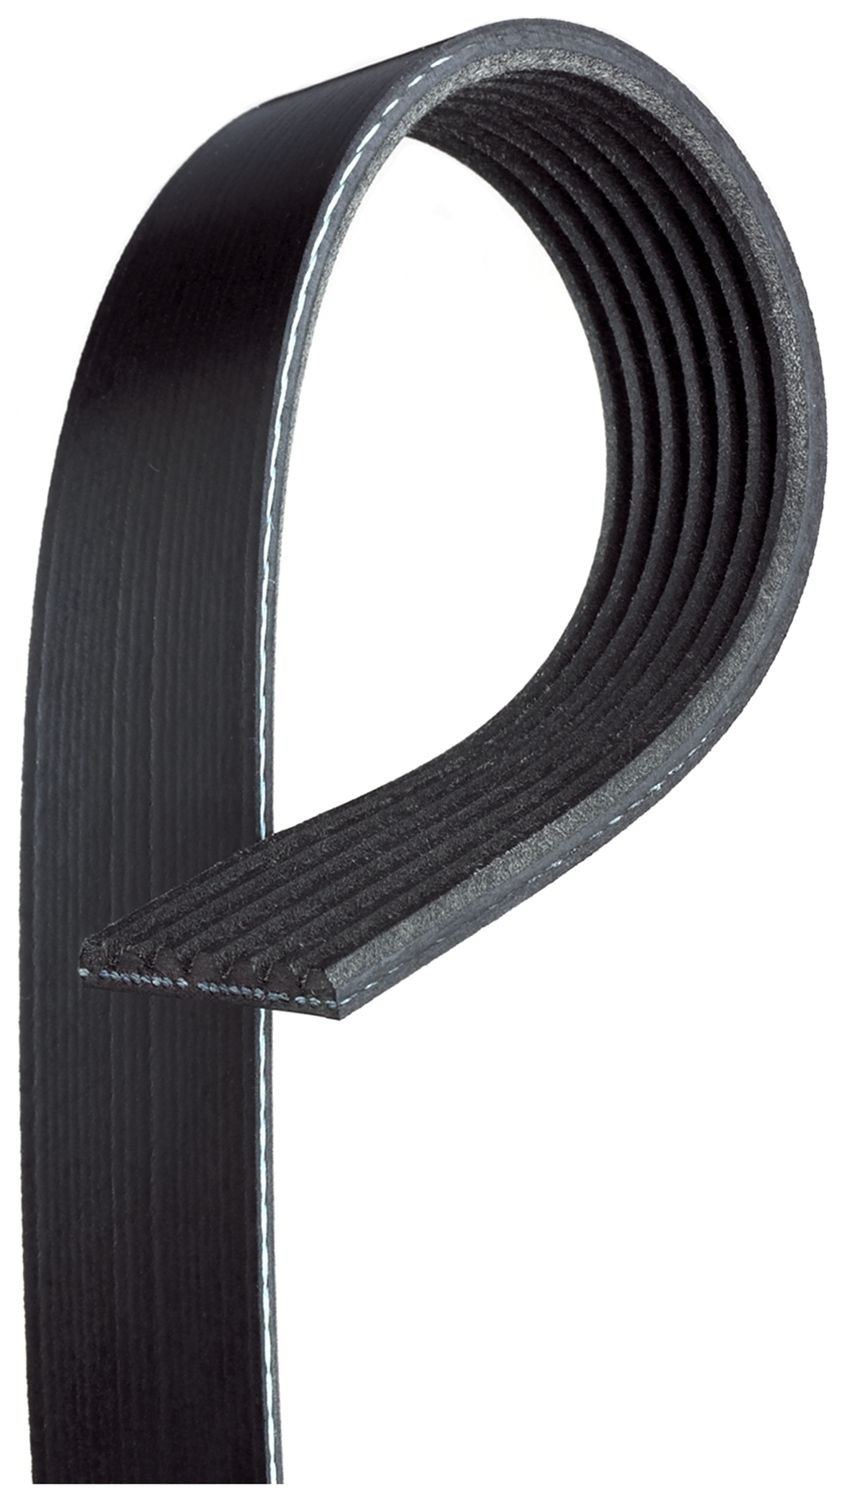 7PK1325 GATES Alternator belt IVECO 1325mm, 7, G-Force™ C12™ CVT Belt